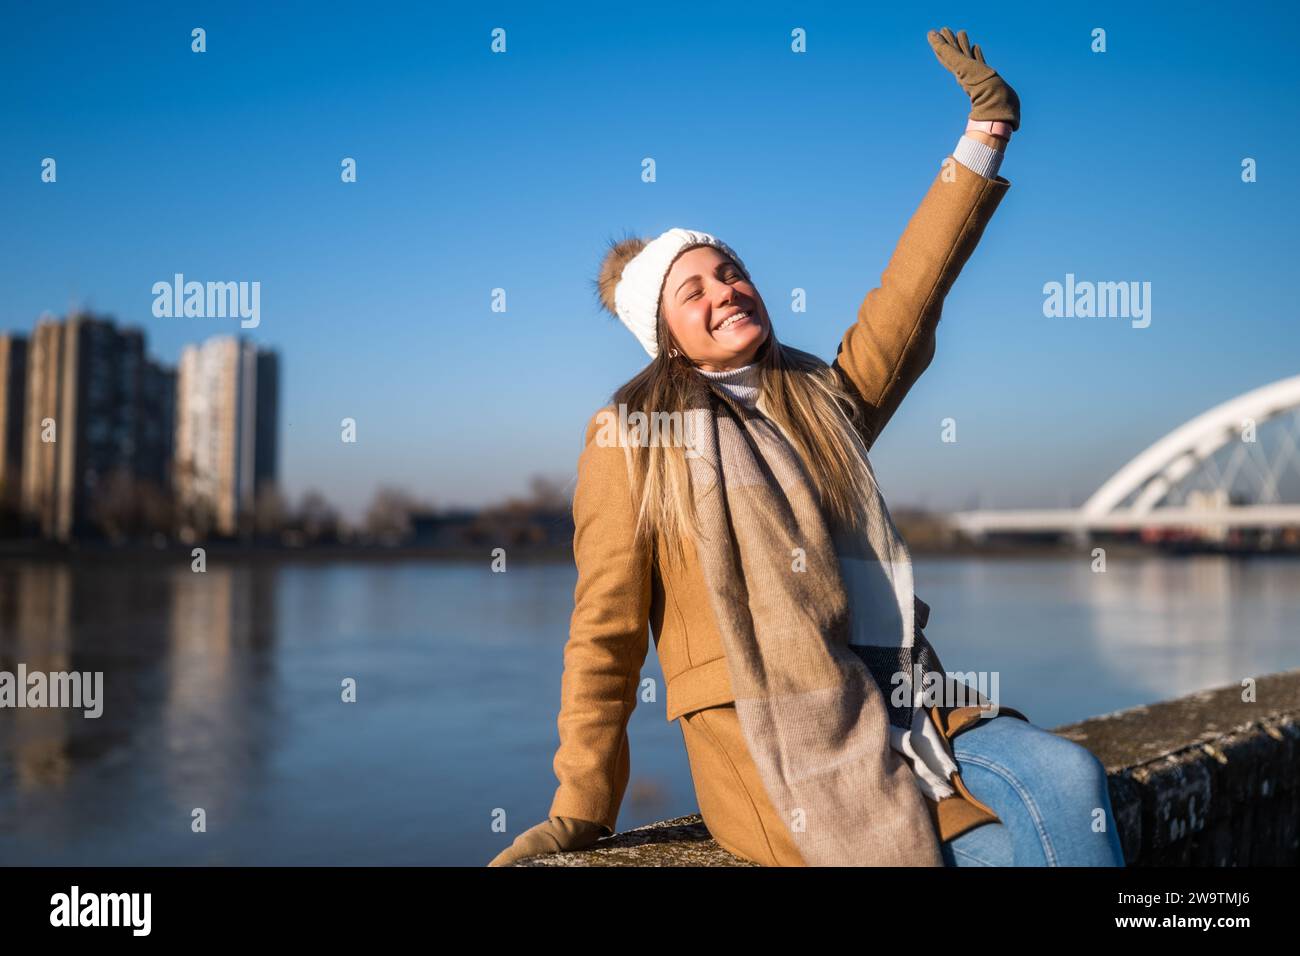 Belle femme en vêtements chauds aime se reposer au bord de la rivière par une journée ensoleillée d'hiver. Banque D'Images